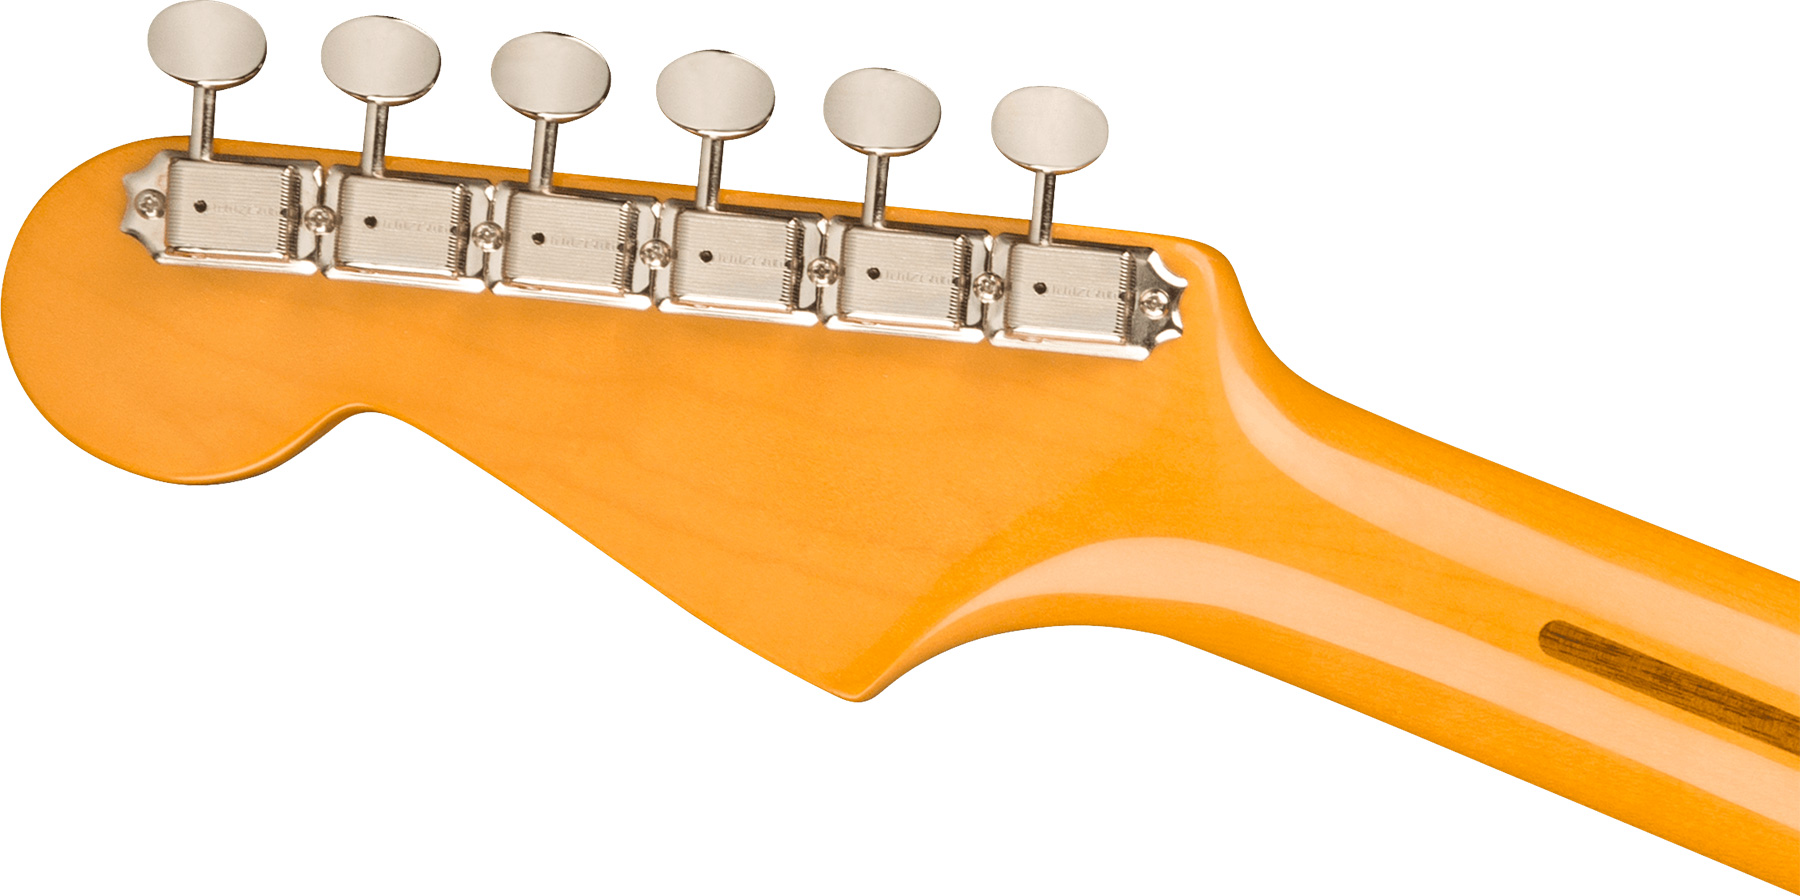 Fender Strat 1957 American Vintage Ii Usa 3s Trem Mn - Vintage Blonde - Str shape electric guitar - Variation 3